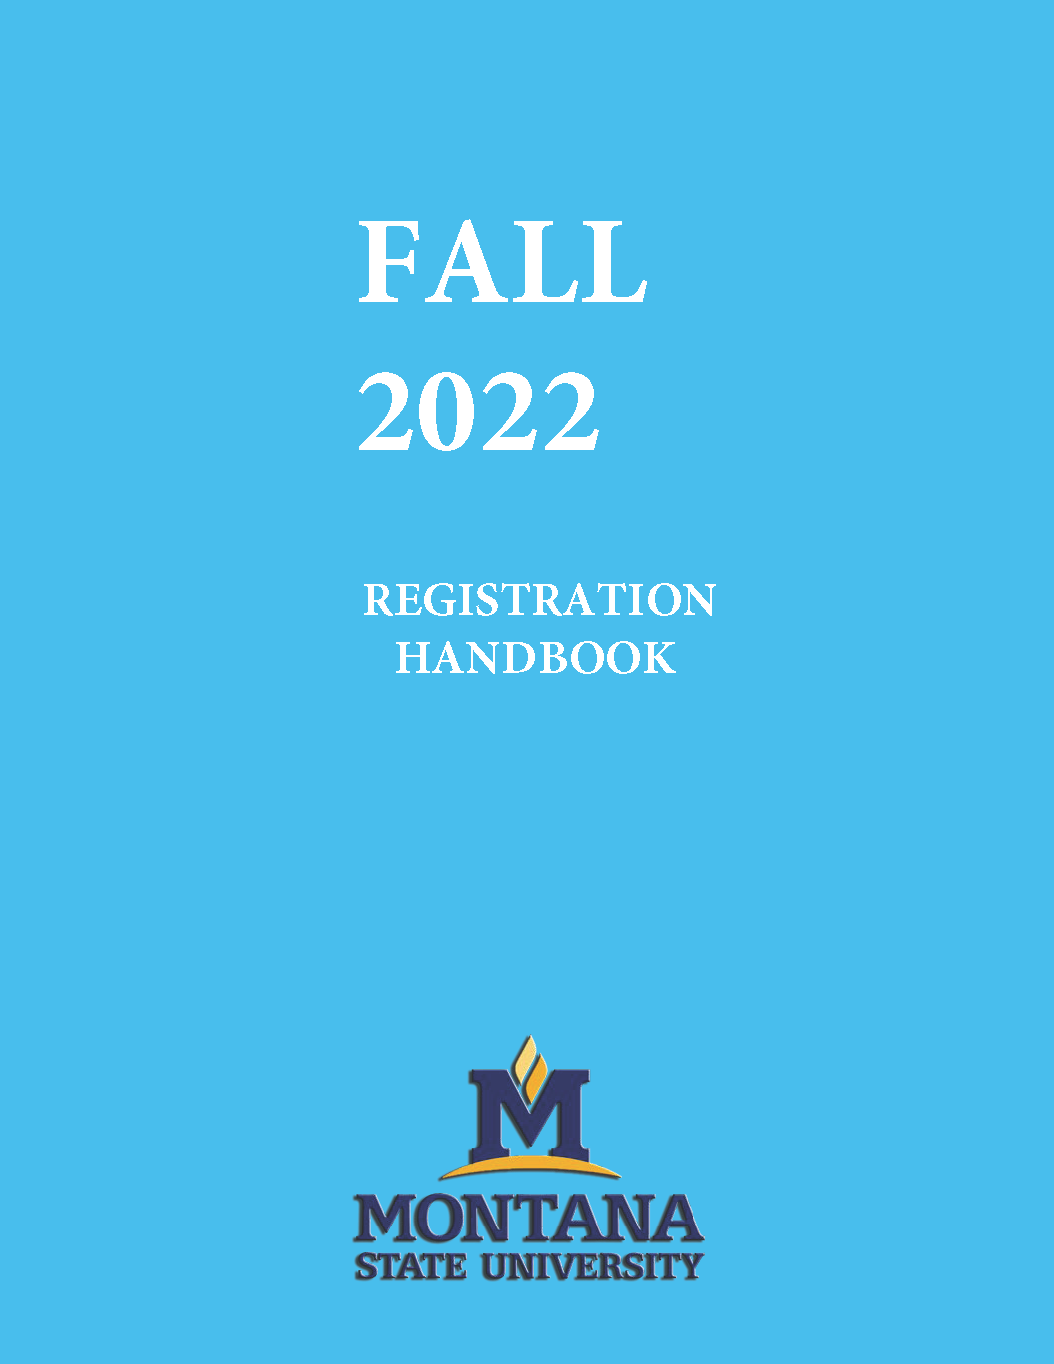 Fall 2022 Registration Handbook